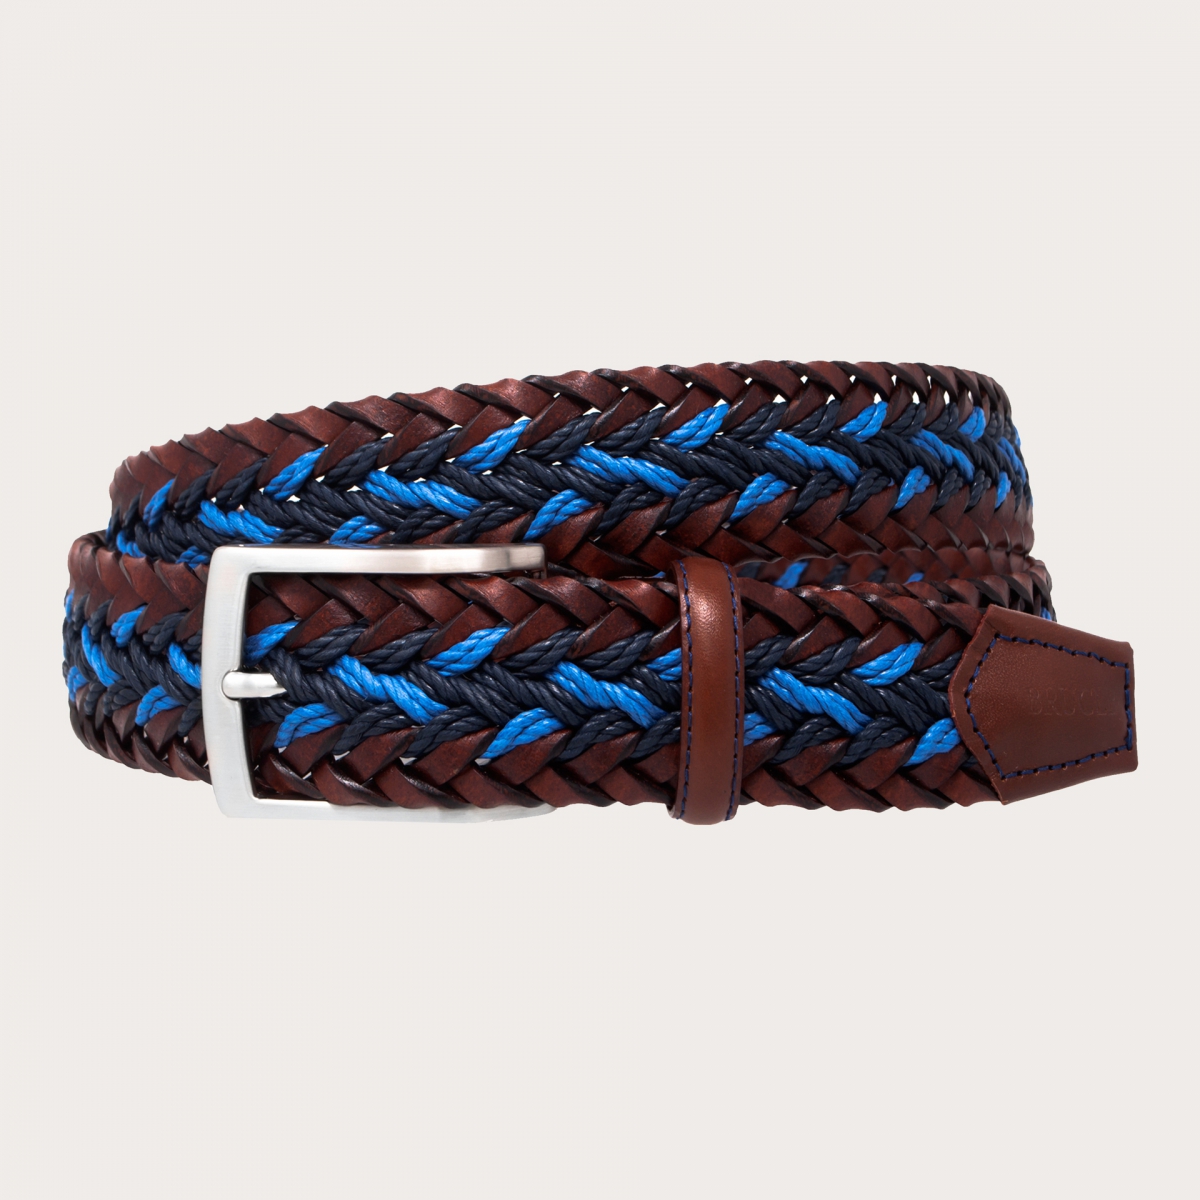 BRUCLE Geflochtener Gürtel in Blau und Braun aus Leder, Seil und Baumwolle